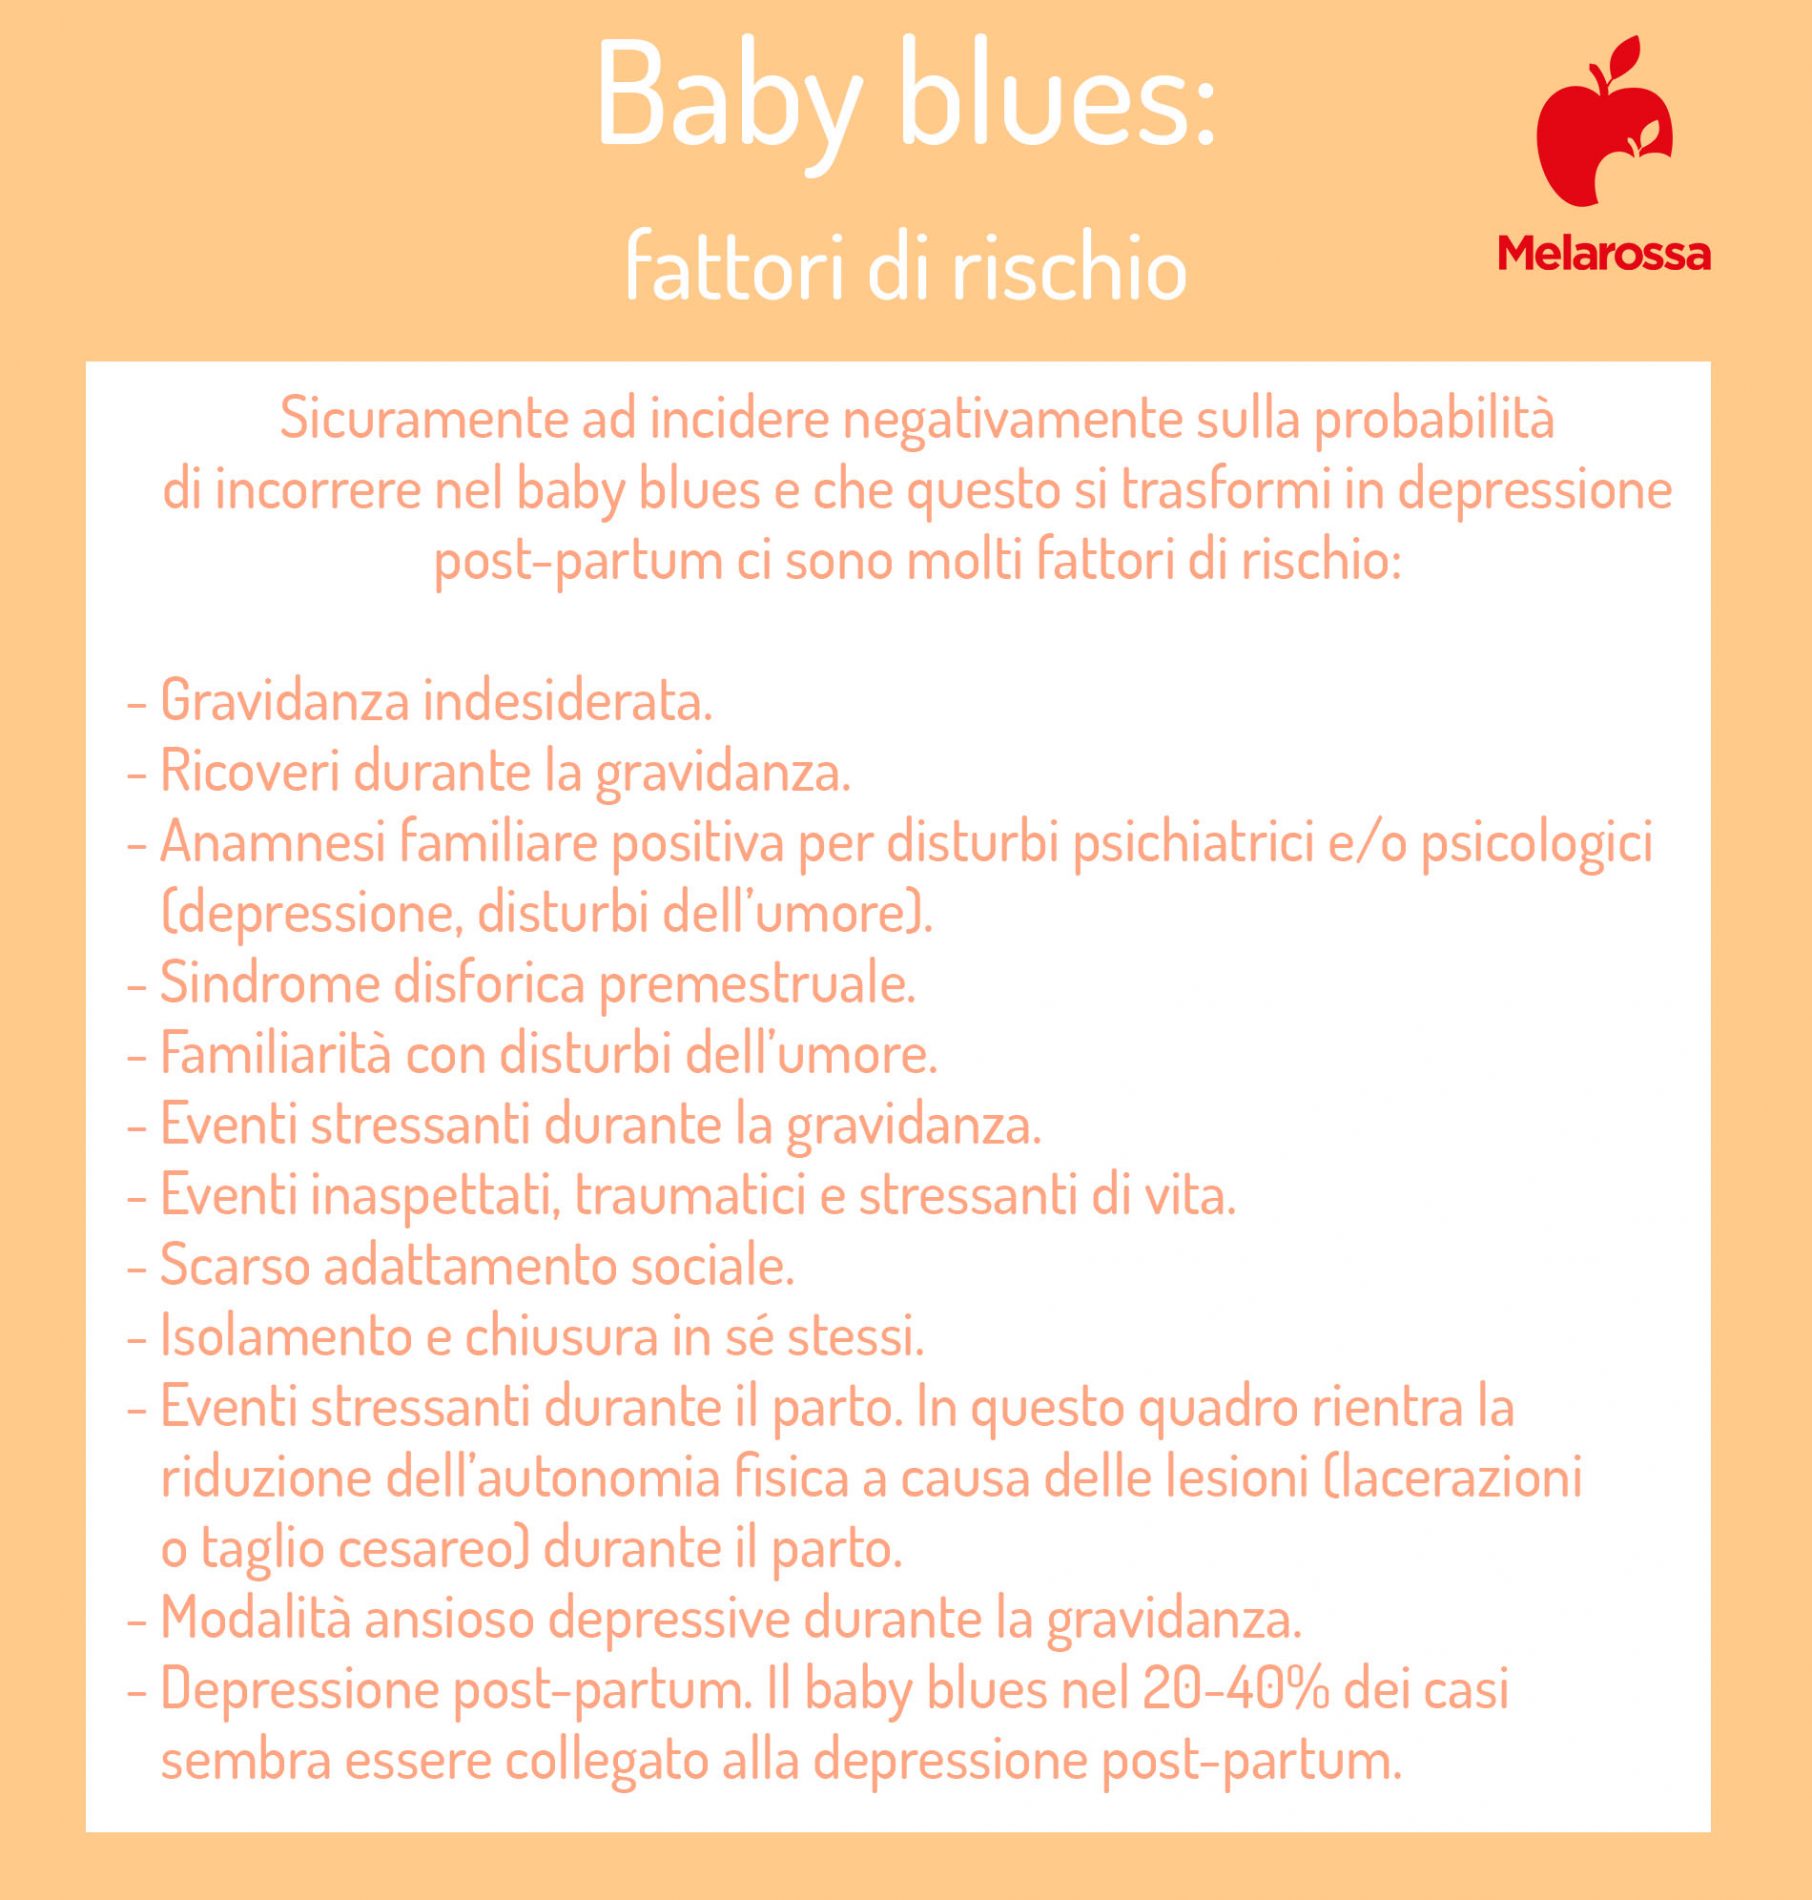 baby blues: fattori di rischio